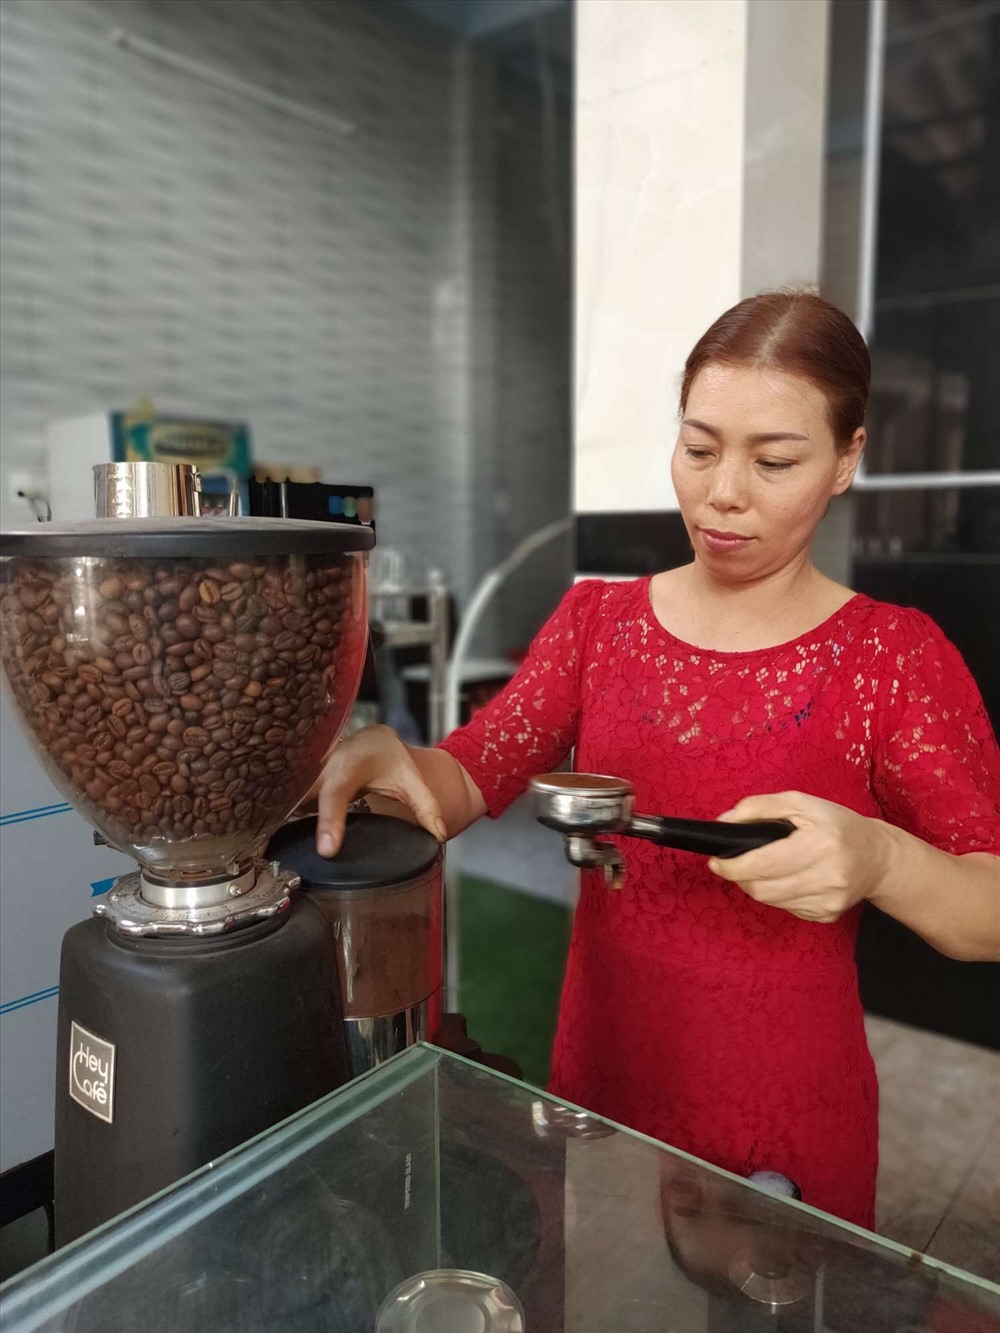 Bà Hà Thị Mai tất bật với việc pha chế cà phê, thu ngân trong những ngày cận Tết Nguyên đán. Ảnh: Nguyễn Đăng.